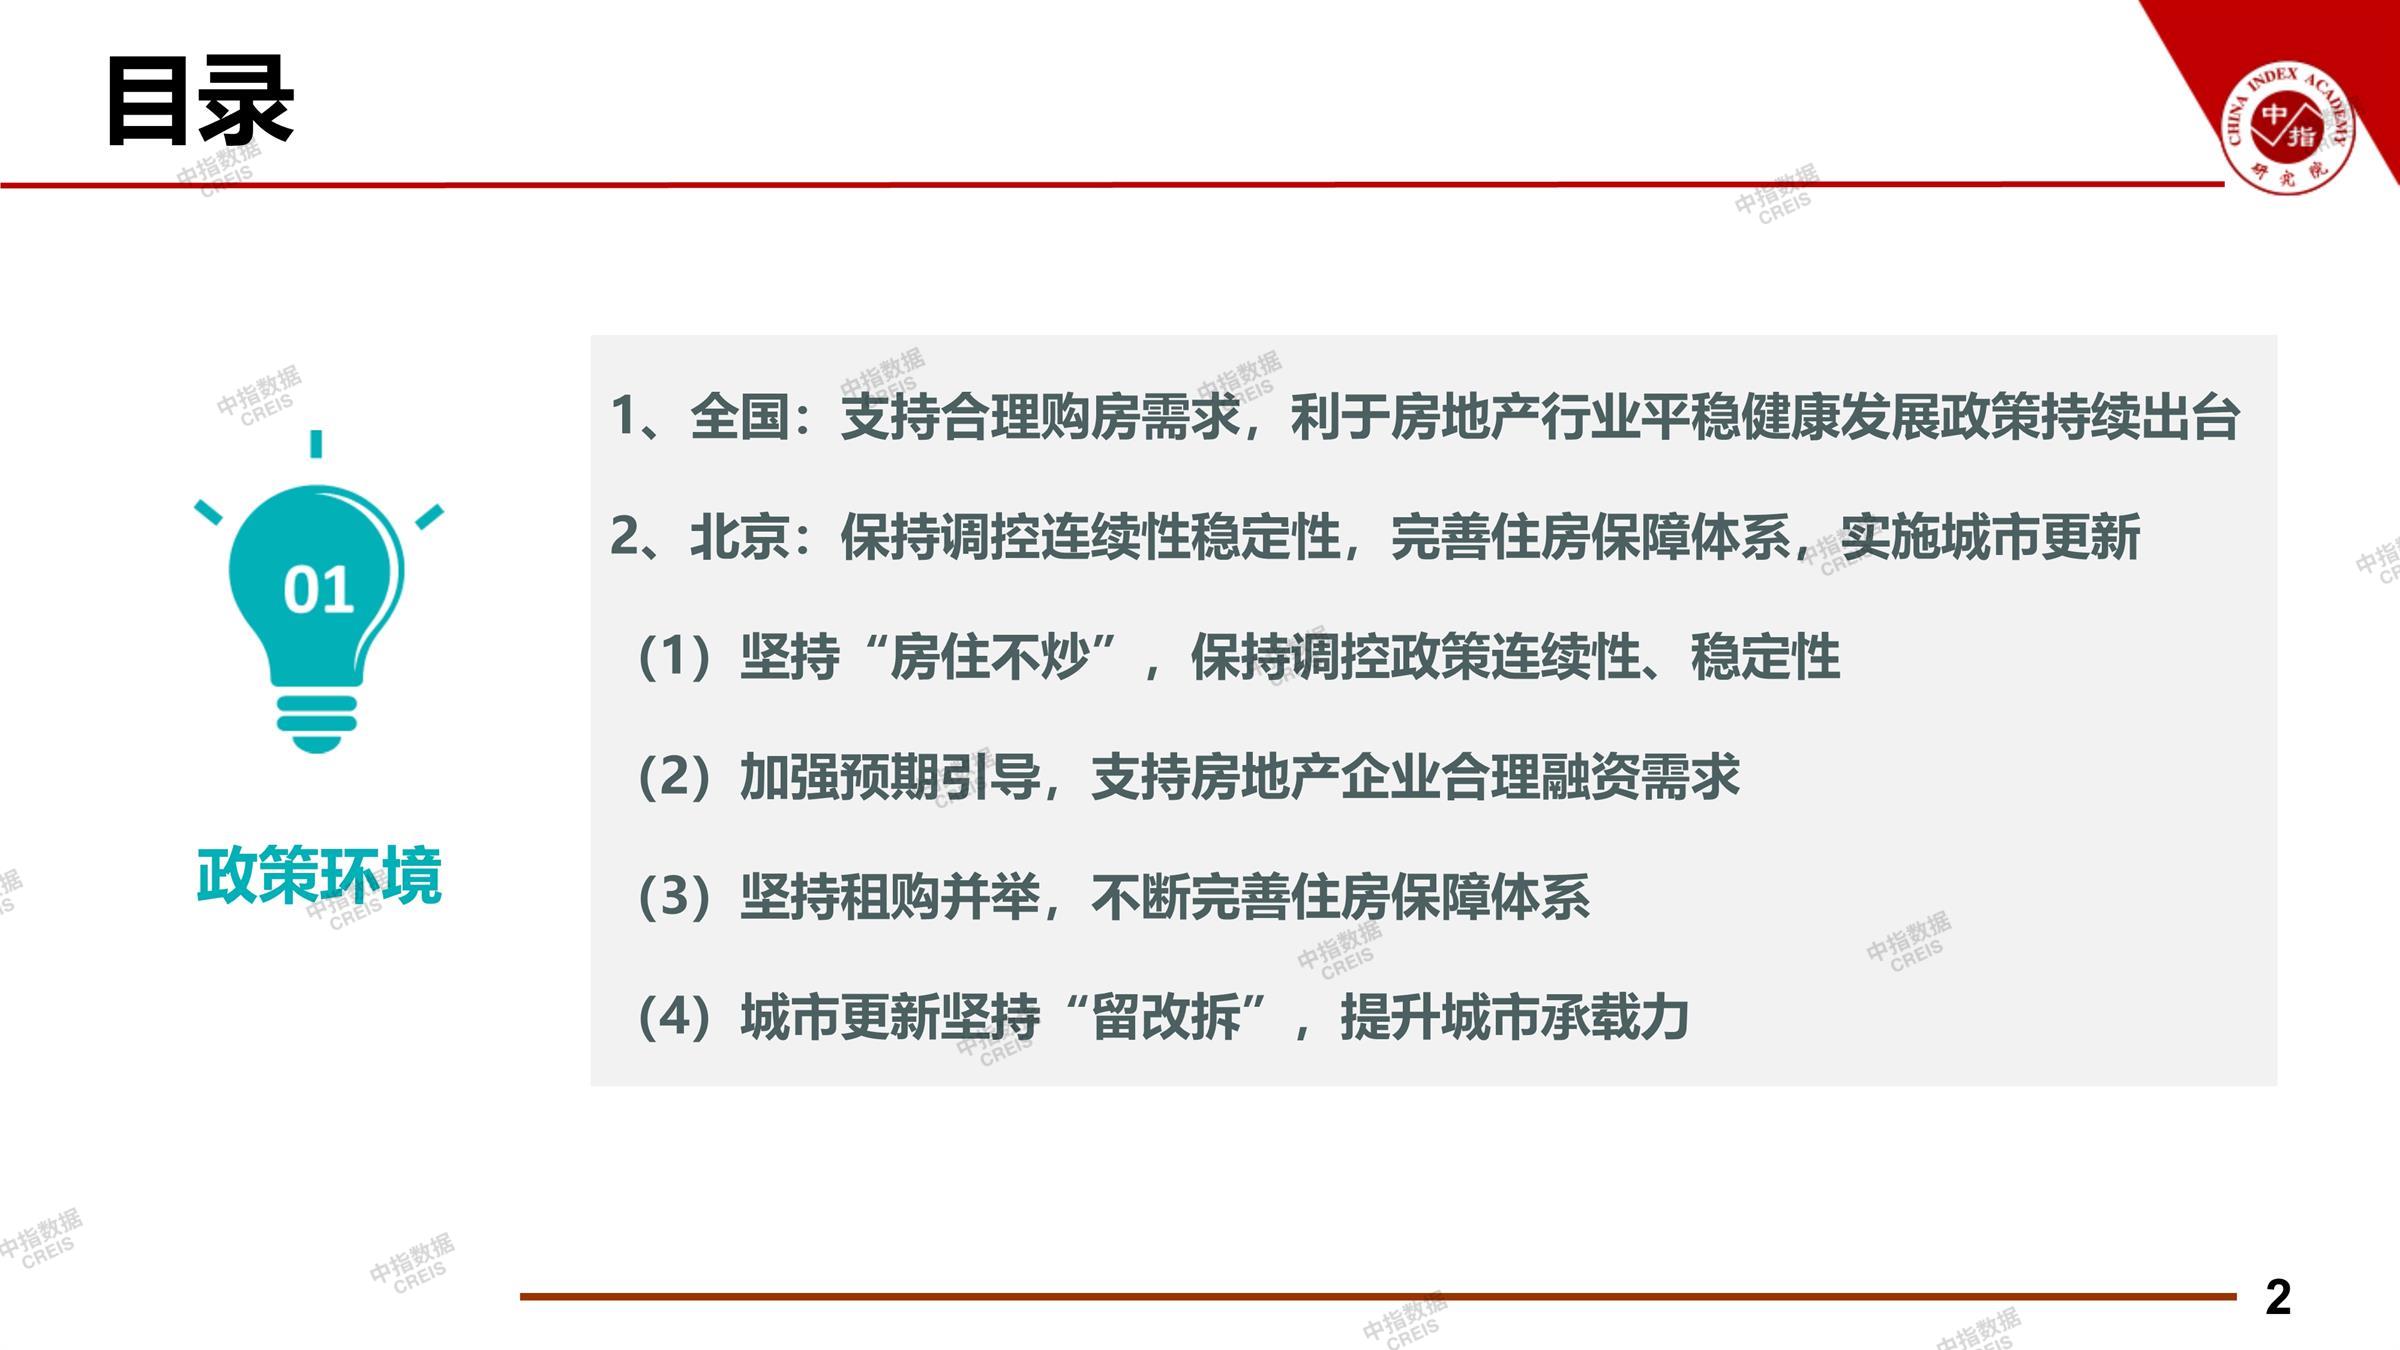 北京、北京房地产市场、北京楼市、新房、二手房、土地市场、商办市场、楼市政策、北京楼市新政